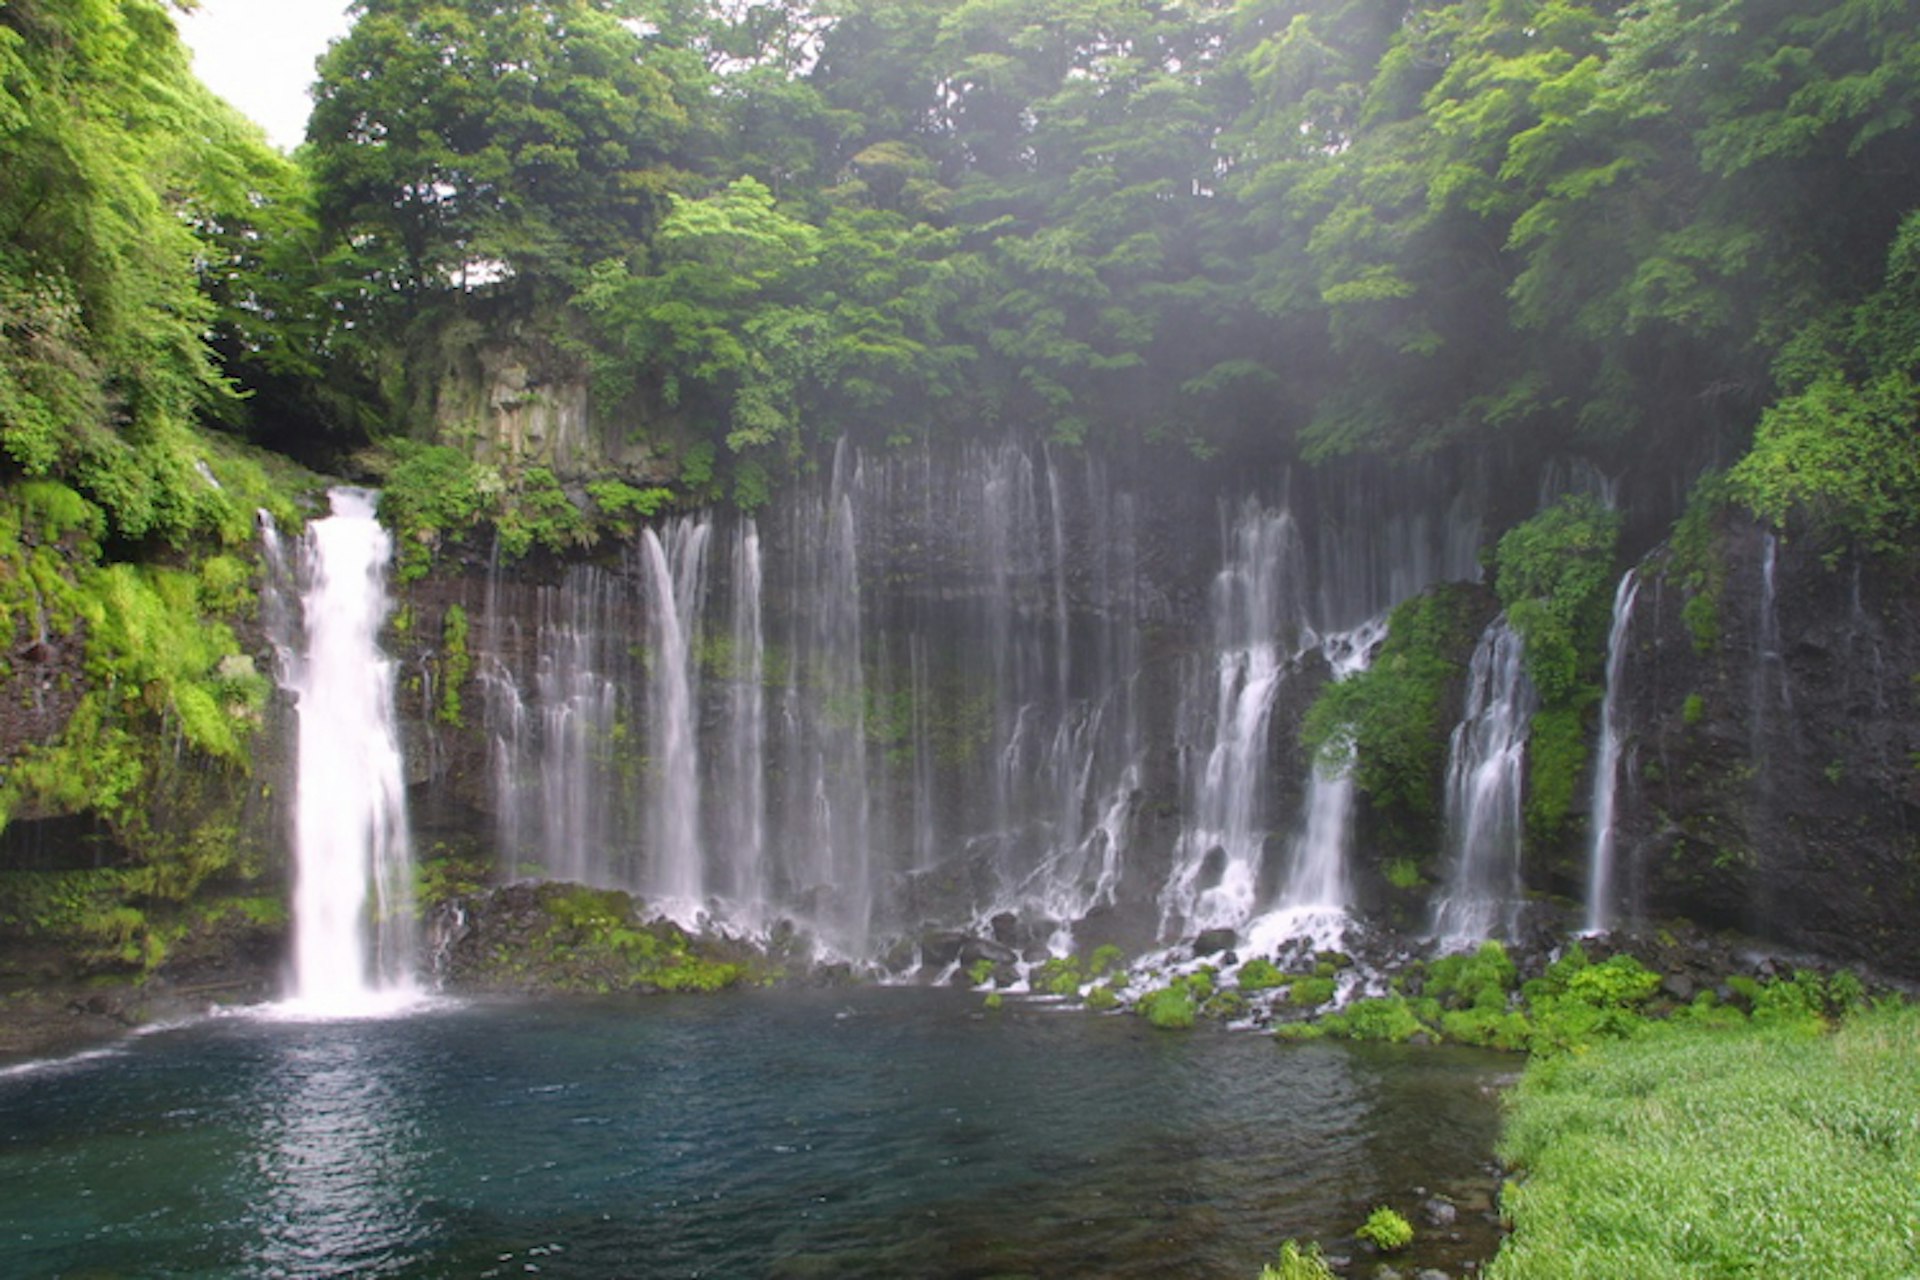 Shiraito Falls in Shikuoka Prefecture. Image by Zengame